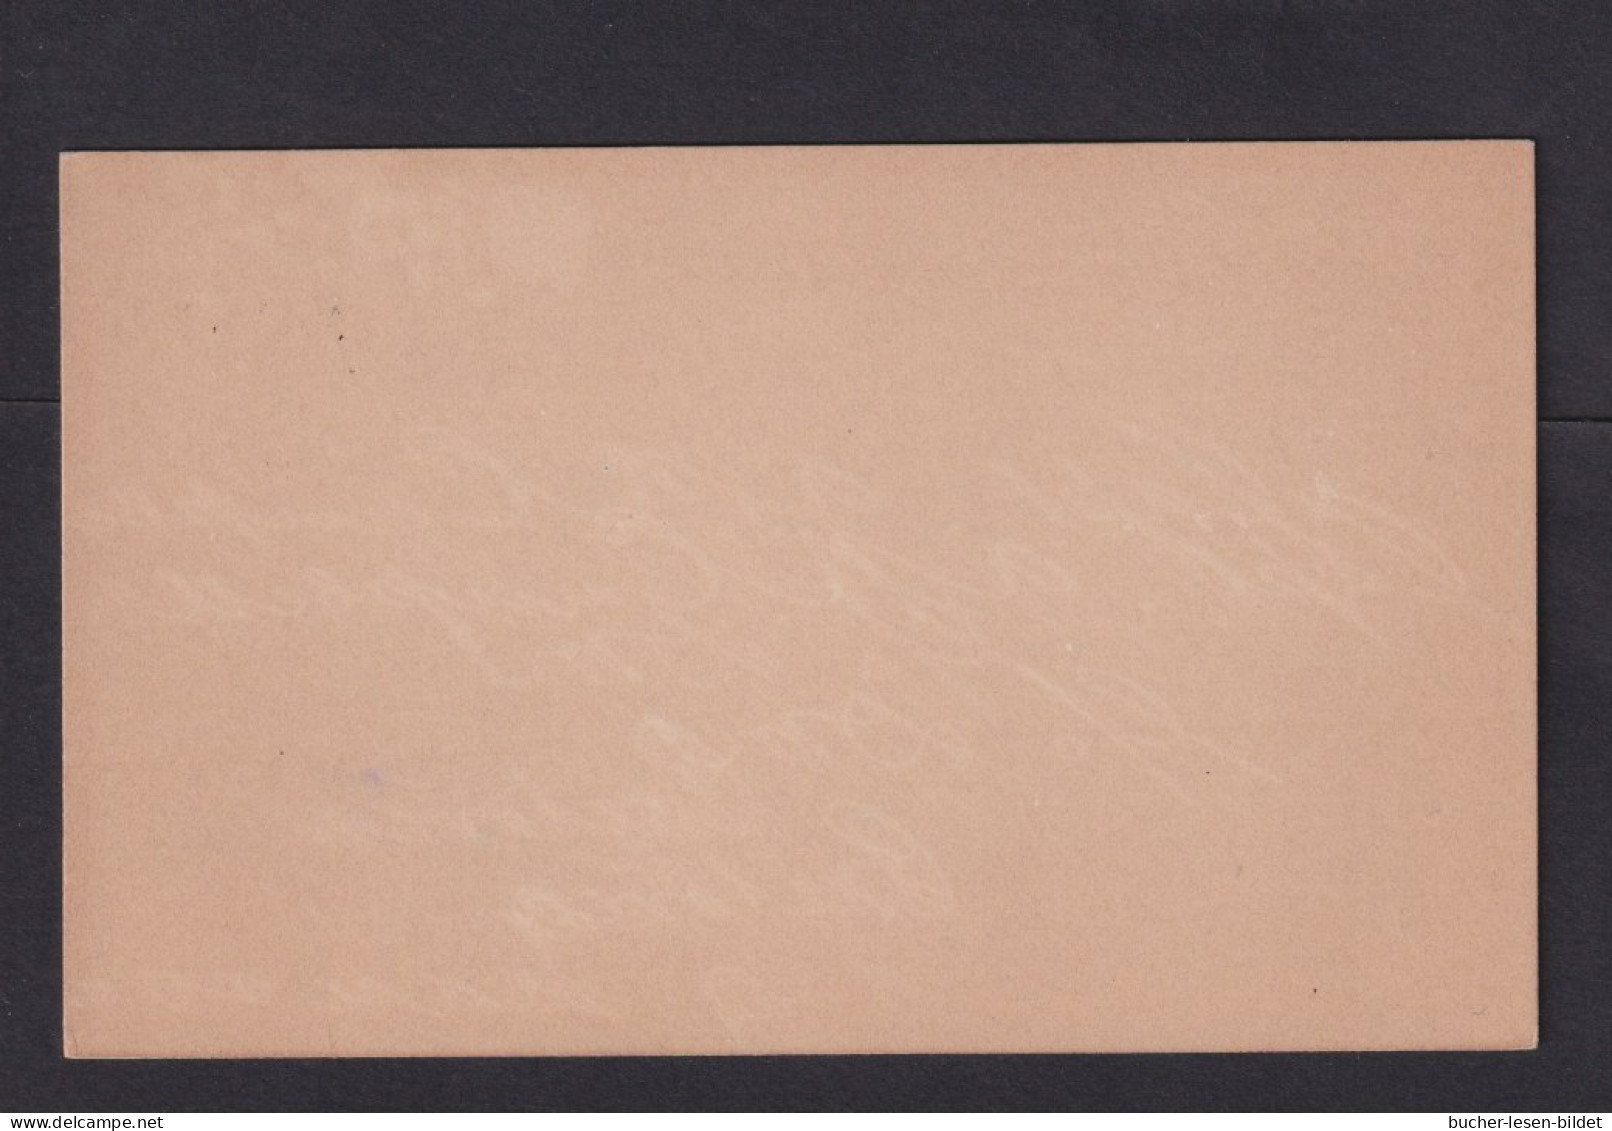 1 P. (klein) Überdruck-Ganzsache (P 5) - Ungebraucht - Estado Libre De Orange (1868-1909)